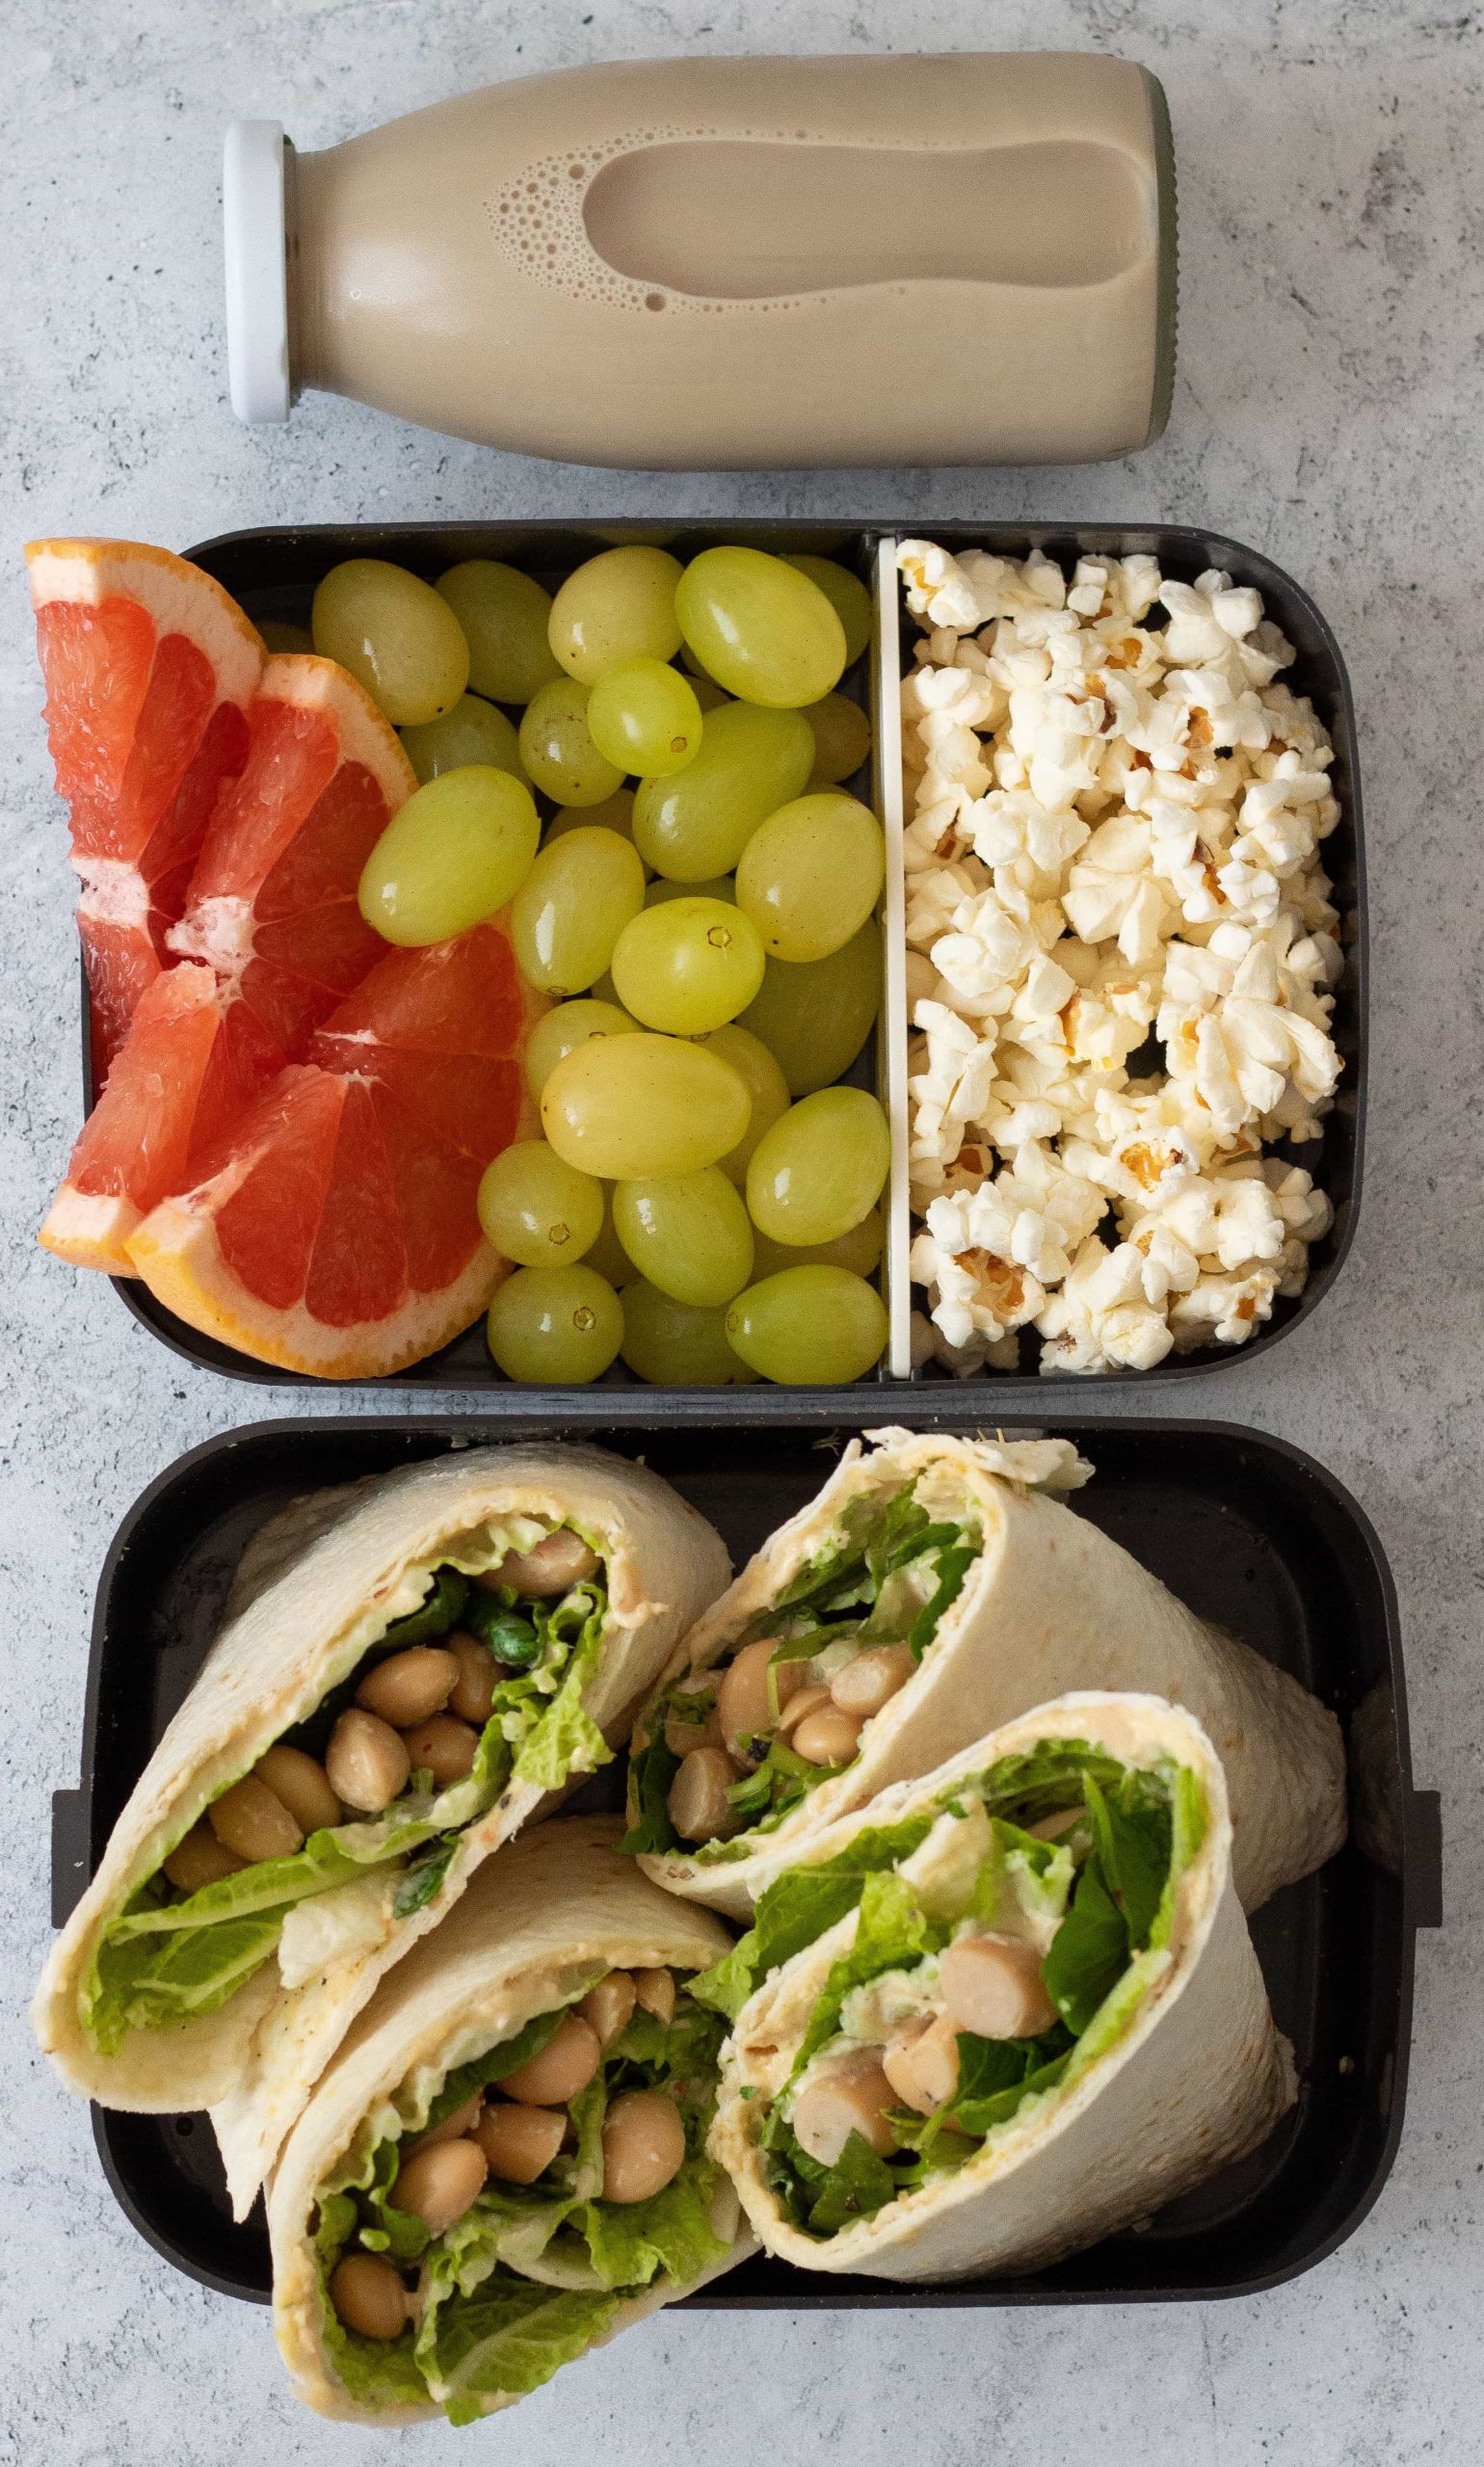 Easy Healthy School Lunches
 5 No Heat Vegan School Lunch Ideas Easy & Healthy Recipes